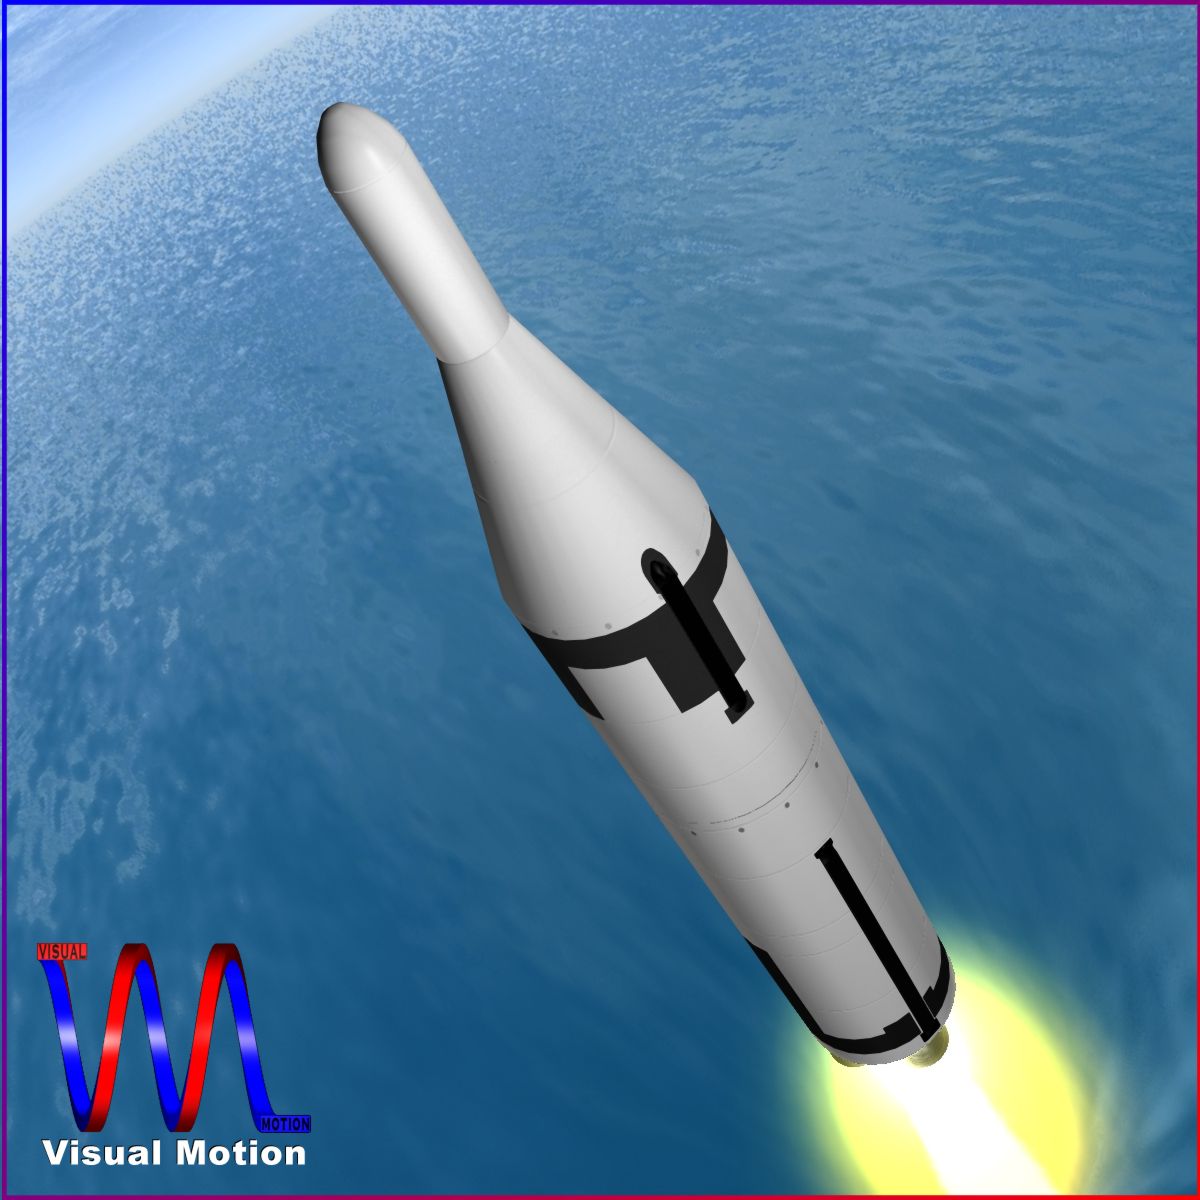 us navy polaris a2 ballistic missile 3d model 3ds dxf cob x obj 151053